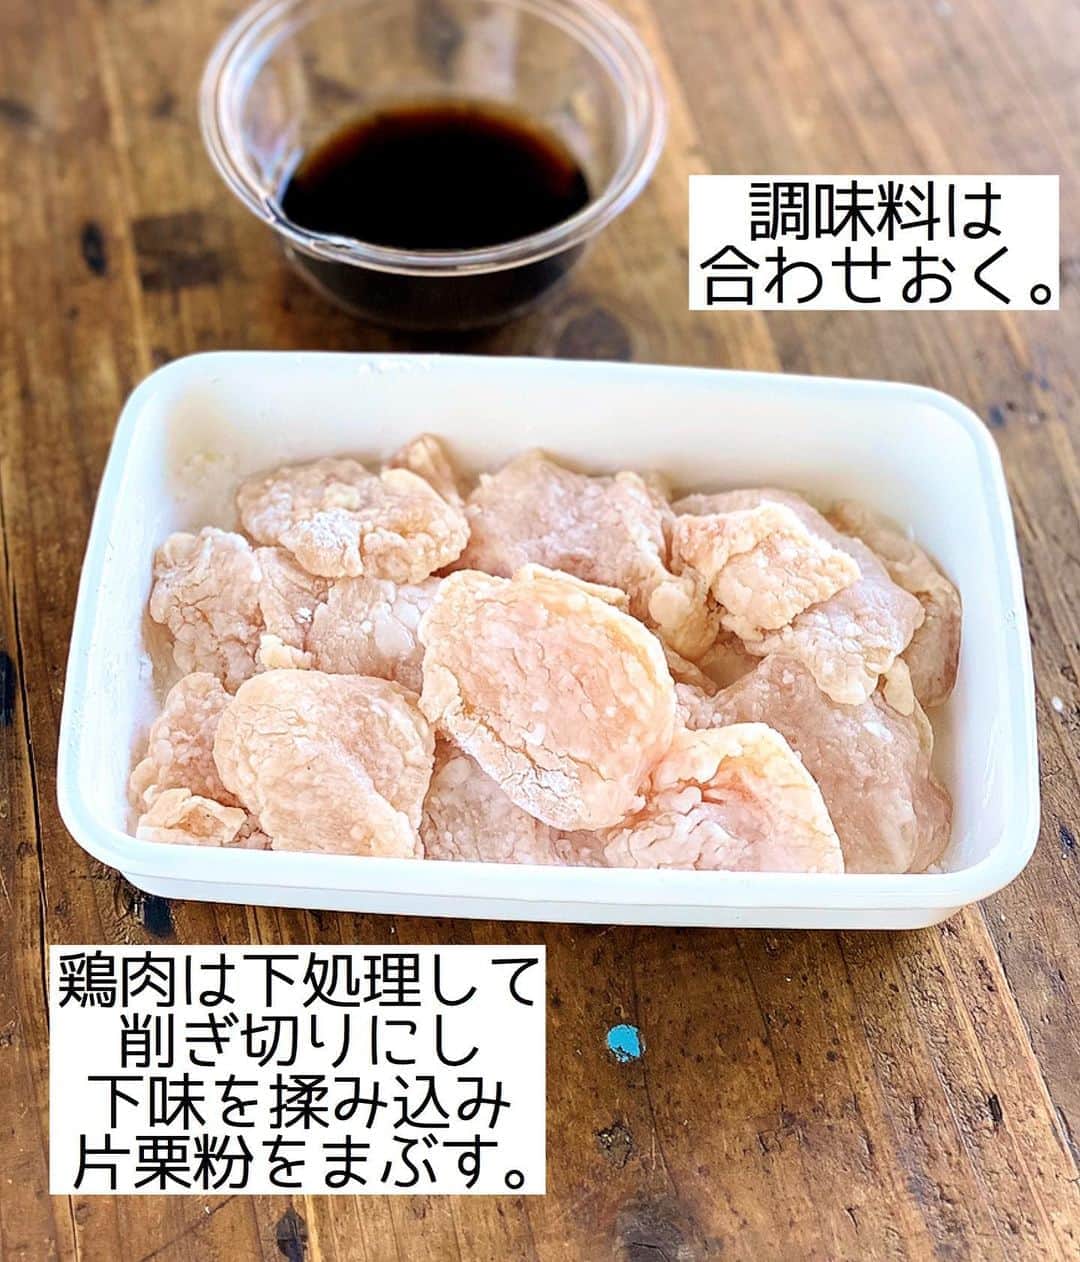 Mizuki【料理ブロガー・簡単レシピ】さんのインスタグラム写真 - (Mizuki【料理ブロガー・簡単レシピ】Instagram)「・﻿ 【レシピ】ーーーーーーーーーー﻿ ♡鶏むね肉de甘酢マヨチキン♡﻿ ーーーーーーーーーーーーーーー﻿ ﻿ ﻿ ﻿ おはようございます(*^^*)﻿ ﻿ 今日はコスパ抜群の鶏むね肉おかず！﻿ ［甘酢マヨチキン］のご紹介です♡﻿ 淡白な鶏むね肉に﻿ 濃厚な甘酢マヨが相性抜群！﻿ テリッテリのビジュアルがまた﻿ 食欲をそそりますよ〜(*´艸`)﻿ ﻿ フライパンひとつでできるので﻿ よかったらお試し下さいね(*^^*)﻿ ﻿ ﻿ ﻿ ーーーーーーーーーーーーーーーーーーーー﻿ 【2人分】﻿ 鶏むね肉...1枚(250g)﻿ ●塩こしょう...少々﻿ ●酒...小2﻿ 片栗粉...適量﻿ サラダ油...大1﻿ ☆醤油・酒...各大1.5﻿ ☆砂糖・酢...各大1﻿ マヨネーズ・万能ねぎ...各適量﻿ ﻿ 1.鶏肉は全体をフォークで刺して1cm厚さの削ぎ切りにし、●を揉み込み片栗粉をまぶす。☆は合わせておく。﻿ 2.フライパンにサラダ油を中火で熱して鶏肉を焼く。焼き色が付いたら裏返してフタをし、弱めの中火で3分蒸し焼きにする。﻿ 3.☆を加えて煮からめ、器に盛ってマヨネーズとねぎをかける。﻿ ーーーーーーーーーーーーーーーーーーーー﻿ ﻿ ﻿ ﻿ 《ポイント》﻿ ♦︎鶏むね肉をフォークで刺すこと、下味を揉み込んで粉をまぶすことで、しっとり柔らかく仕上がります♩﻿ ♦︎千切りレタスやキャベツなどと盛り合わせてもよく合います♩﻿ ﻿ ﻿ ﻿ ﻿ ﻿ ﻿ ﻿ ＿＿＿＿＿＿＿＿＿＿＿＿＿＿＿＿＿＿＿﻿ 📕6刷重版しました📕﻿ 簡単・時短！ 毎日のごはんがラクになる﻿ ✨🦋 【 #Mizukiの今どき和食 】🦋✨﻿ ＿＿＿＿＿＿＿＿＿＿＿＿＿＿＿＿＿＿＿﻿ なるべく少ない材料で﻿ 手間も時間も省きながら﻿ 簡単にできるおいしい和食レシピ♩﻿ 簡単に失敗なくマスターできる一冊で﻿ もっと気軽に、カジュアルに﻿ 和食を楽しんで下さいね(*^^*)﻿ ＿＿＿＿＿＿＿＿＿＿＿＿＿＿＿＿＿＿＿﻿ ﻿ ﻿ ﻿ ＿＿＿＿＿＿＿＿＿＿＿＿＿＿＿＿＿＿＿﻿ 🎀6刷重版しました🎀﻿ 混ぜて焼くだけ。はじめてでも失敗しない！﻿ 【#ホットケーキミックスのお菓子 】﻿ ﻿ 一冊まるっとホケミスイーツ♩﻿ 普段のおやつから﻿ 特別な日にも使えるレシピを﻿ この一冊に詰め込みました(*^^*)﻿ ホットケーキミックスを使えば﻿ 簡単に本格的なお菓子が作れますよ♡﻿ ＿＿＿＿＿＿＿＿＿＿＿＿＿＿＿＿＿﻿ ﻿ ﻿ ﻿ ﻿ ￣￣￣￣￣￣￣￣￣￣￣￣￣￣￣￣￣￣﻿ レシピを作って下さった際や﻿ レシピ本についてのご投稿には﻿ タグ付け( @mizuki_31cafe )して﻿ お知らせいただけると嬉しいです😊💕﻿ ＿＿＿＿＿＿＿＿＿＿＿＿＿＿＿＿＿＿﻿ ﻿ ﻿ ﻿ ﻿ ﻿ #鶏むね肉#むね肉#甘酢#マヨネーズ#コスパ#Mizuki#簡単レシピ#時短レシピ#節約レシピ#料理#レシピ#フーディーテーブル#マカロニメイト#おうちごはん#デリスタグラマー#料理好きな人と繋がりたい#食べ物#料理記録#おうちごはんlover#写真好きな人と繋がりたい#foodpic#cooking#recipe#lin_stagrammer#foodporn#yummy#甘酢マヨチキンm」8月11日 7時10分 - mizuki_31cafe